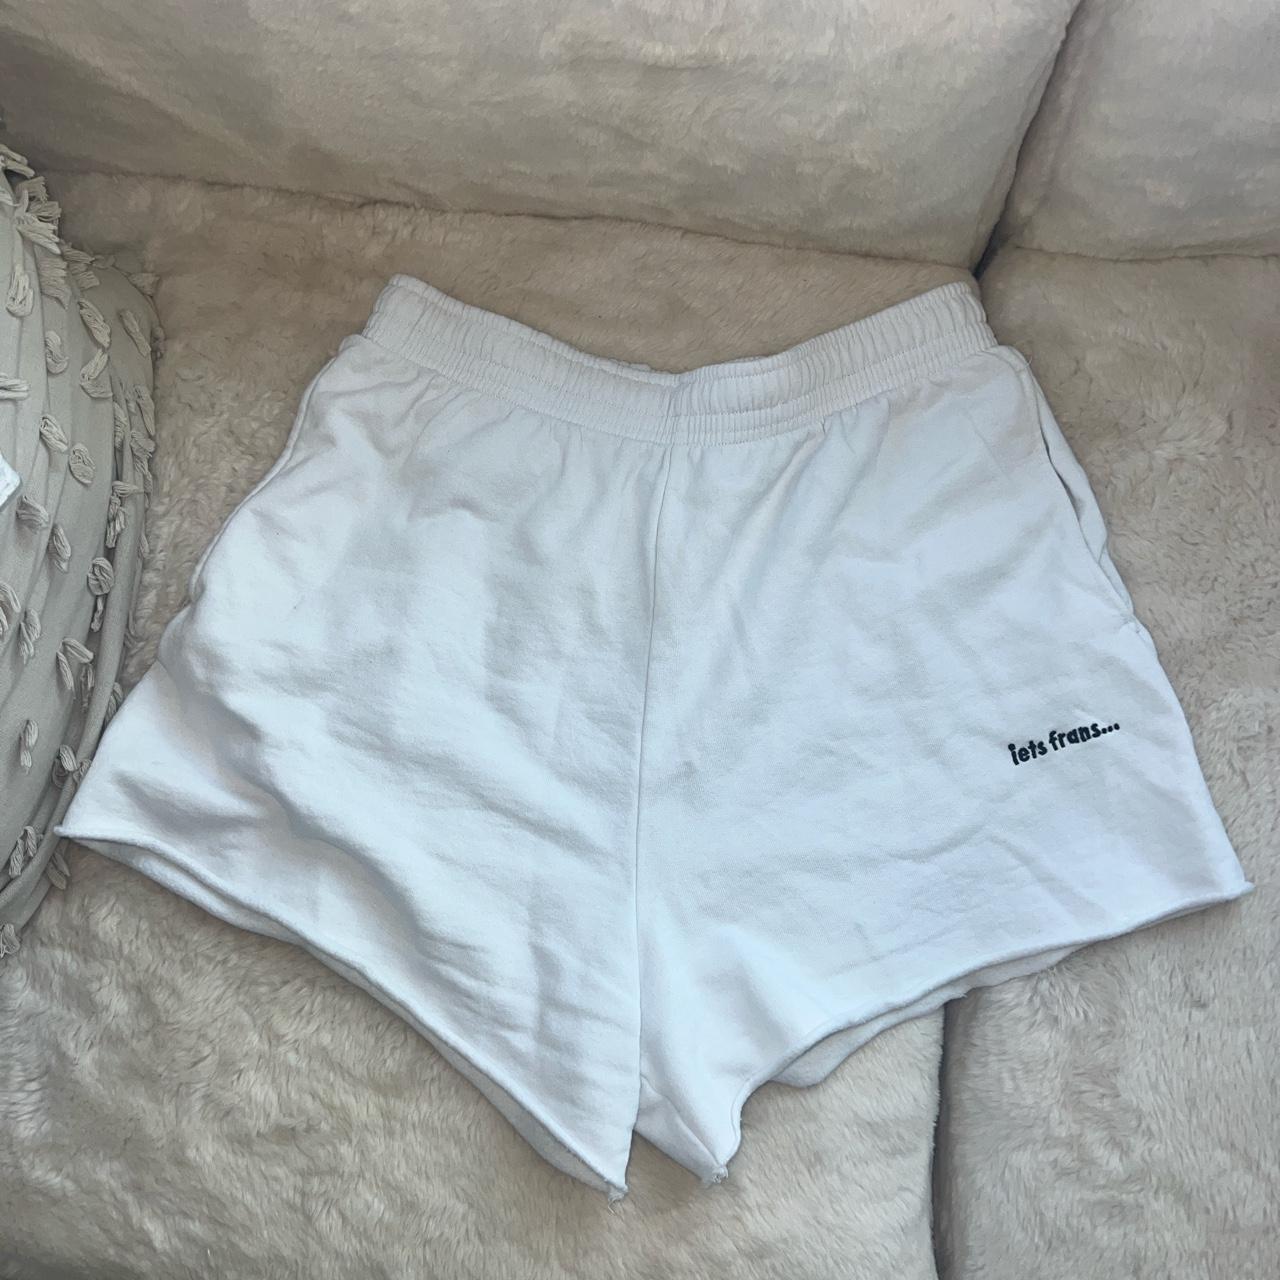 iets frans... Women's White Shorts | Depop